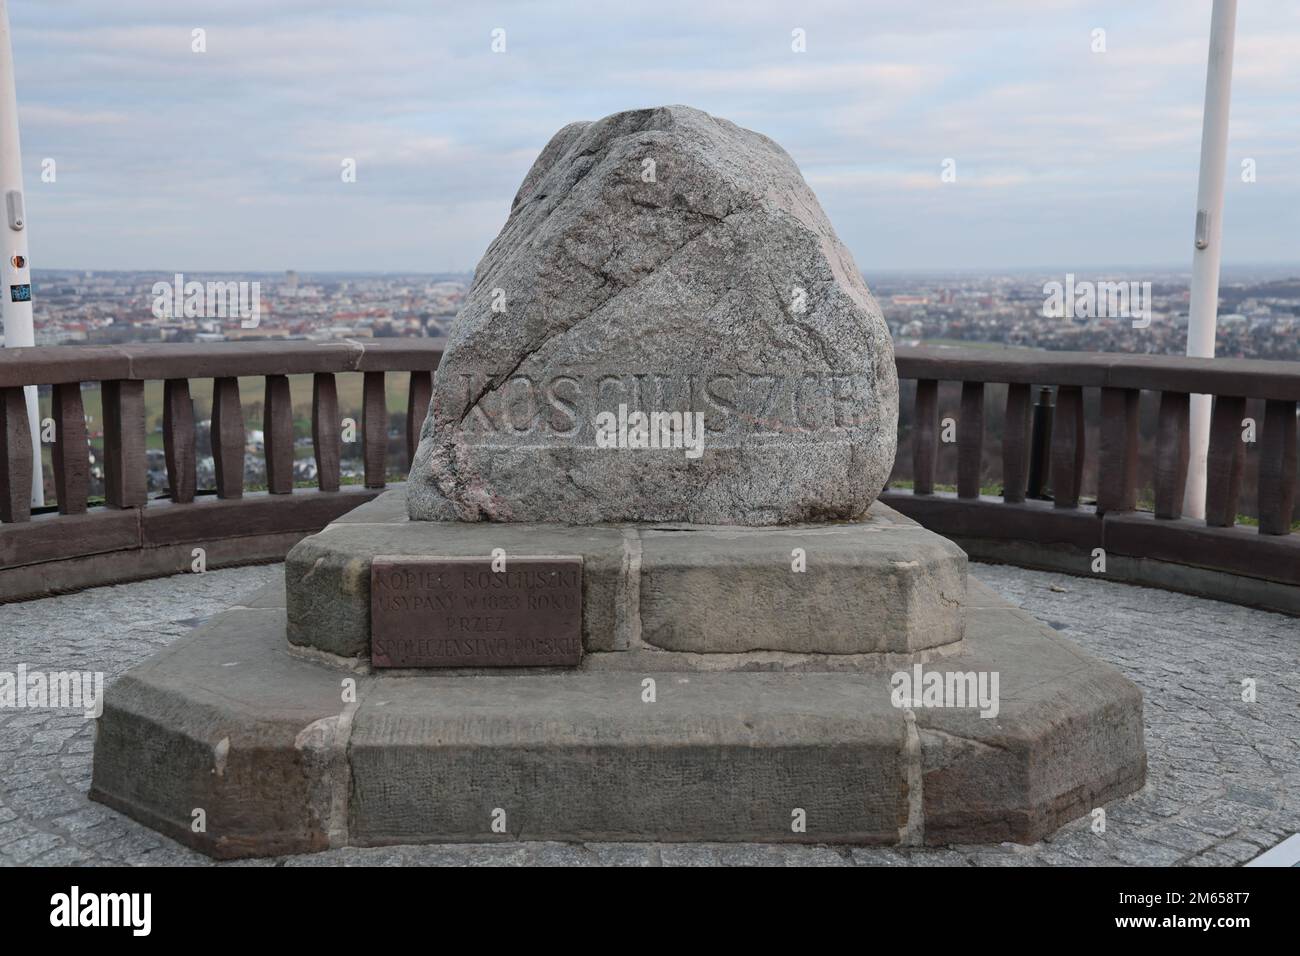 Memorial rock, in honour of the historical national leader Tadeusz Kosciuszko on top of the Kopiec Kosciuszki (Kosciuszko's Mound) in Krakow, Poland Stock Photo